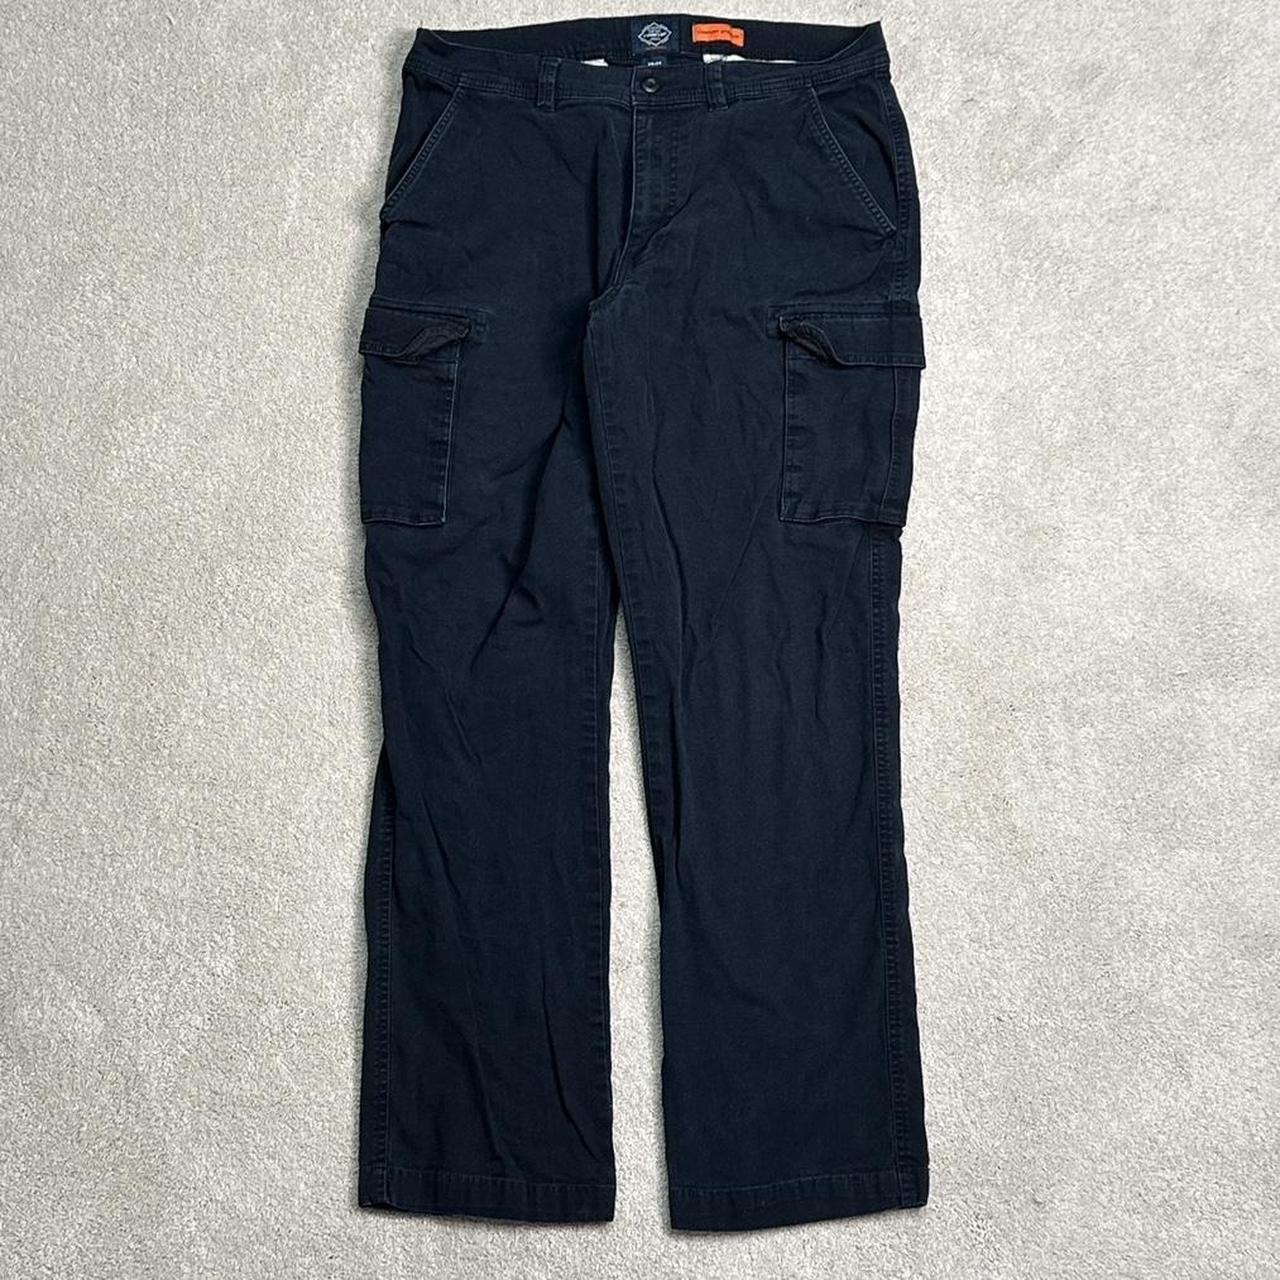 St. John’s Bay Cargo pants Faded Black Size: 34/34 - Depop